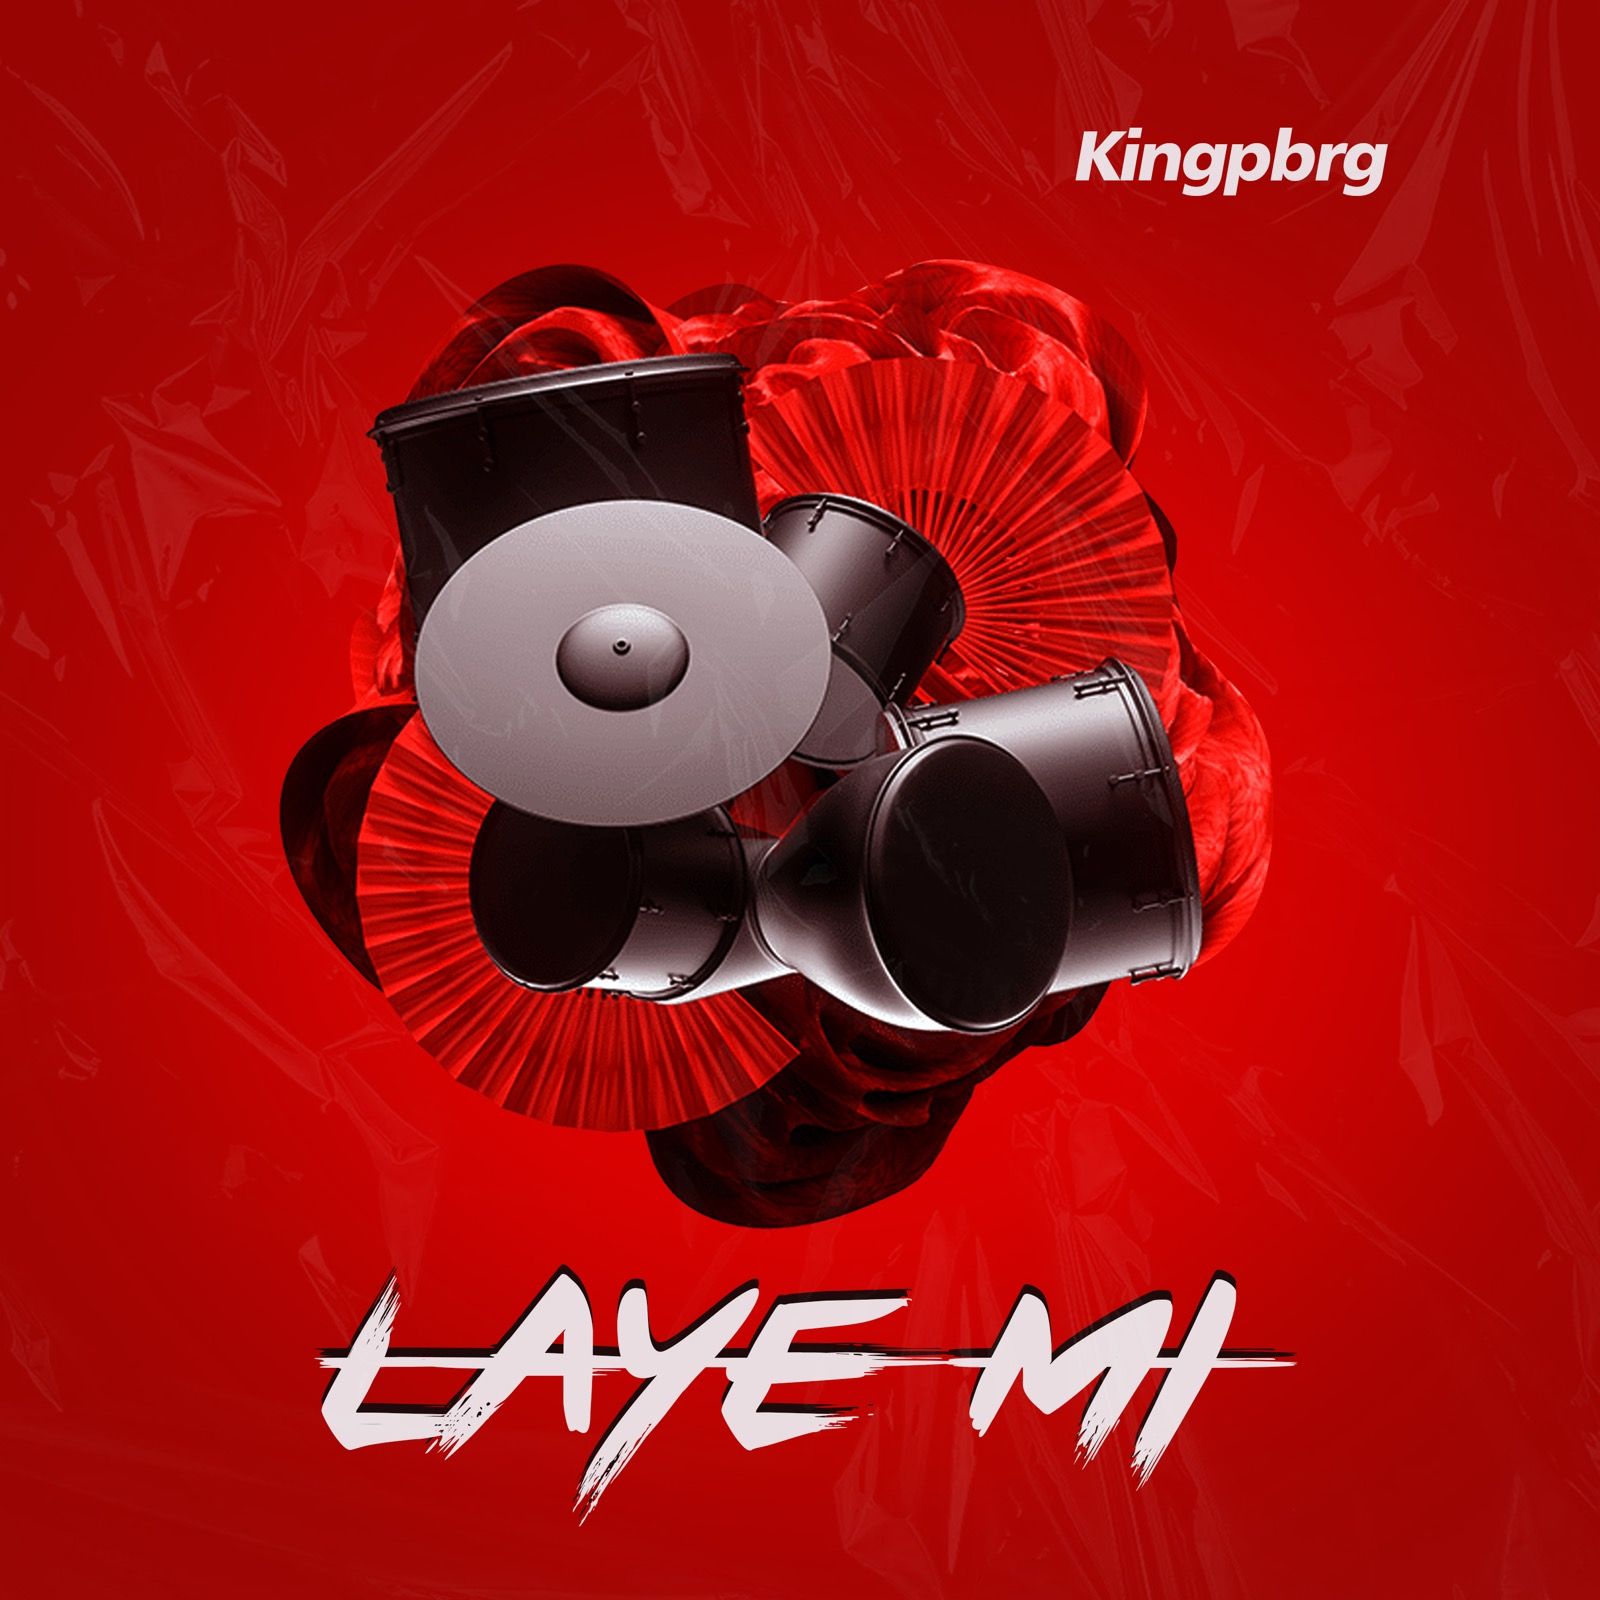 Kingpbrg - Laye Mi